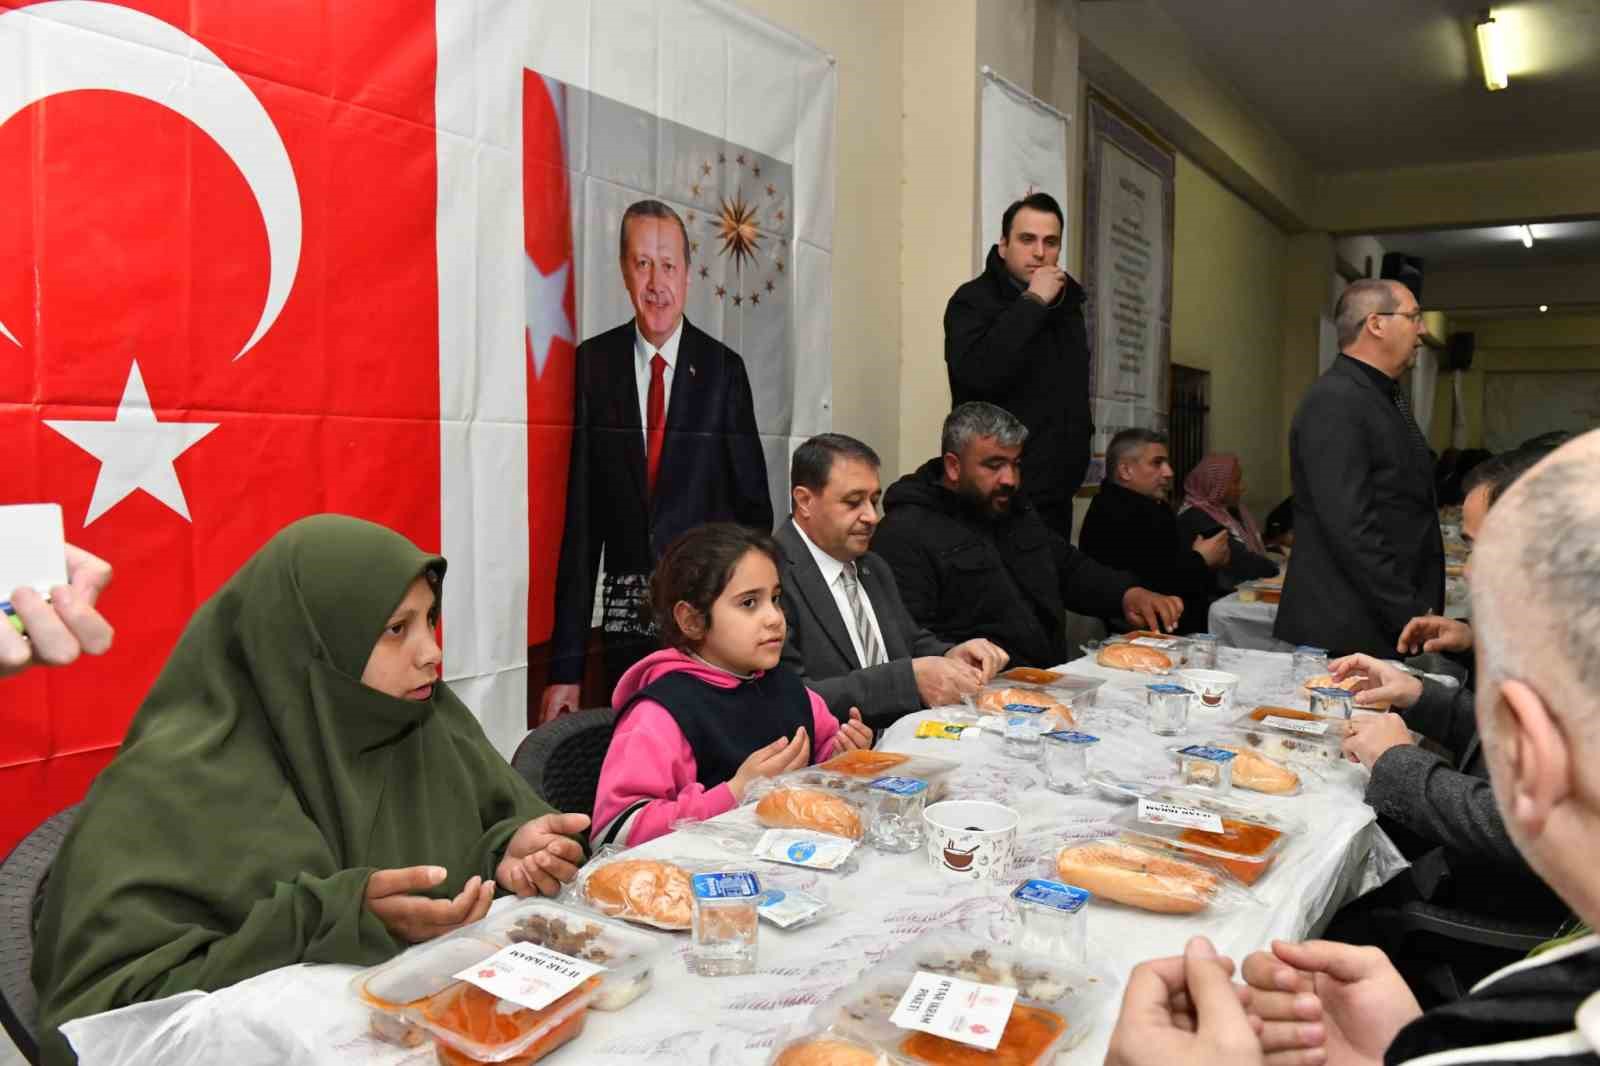 Vali Şıldak hayırseverlerin iftar programına katıldı
